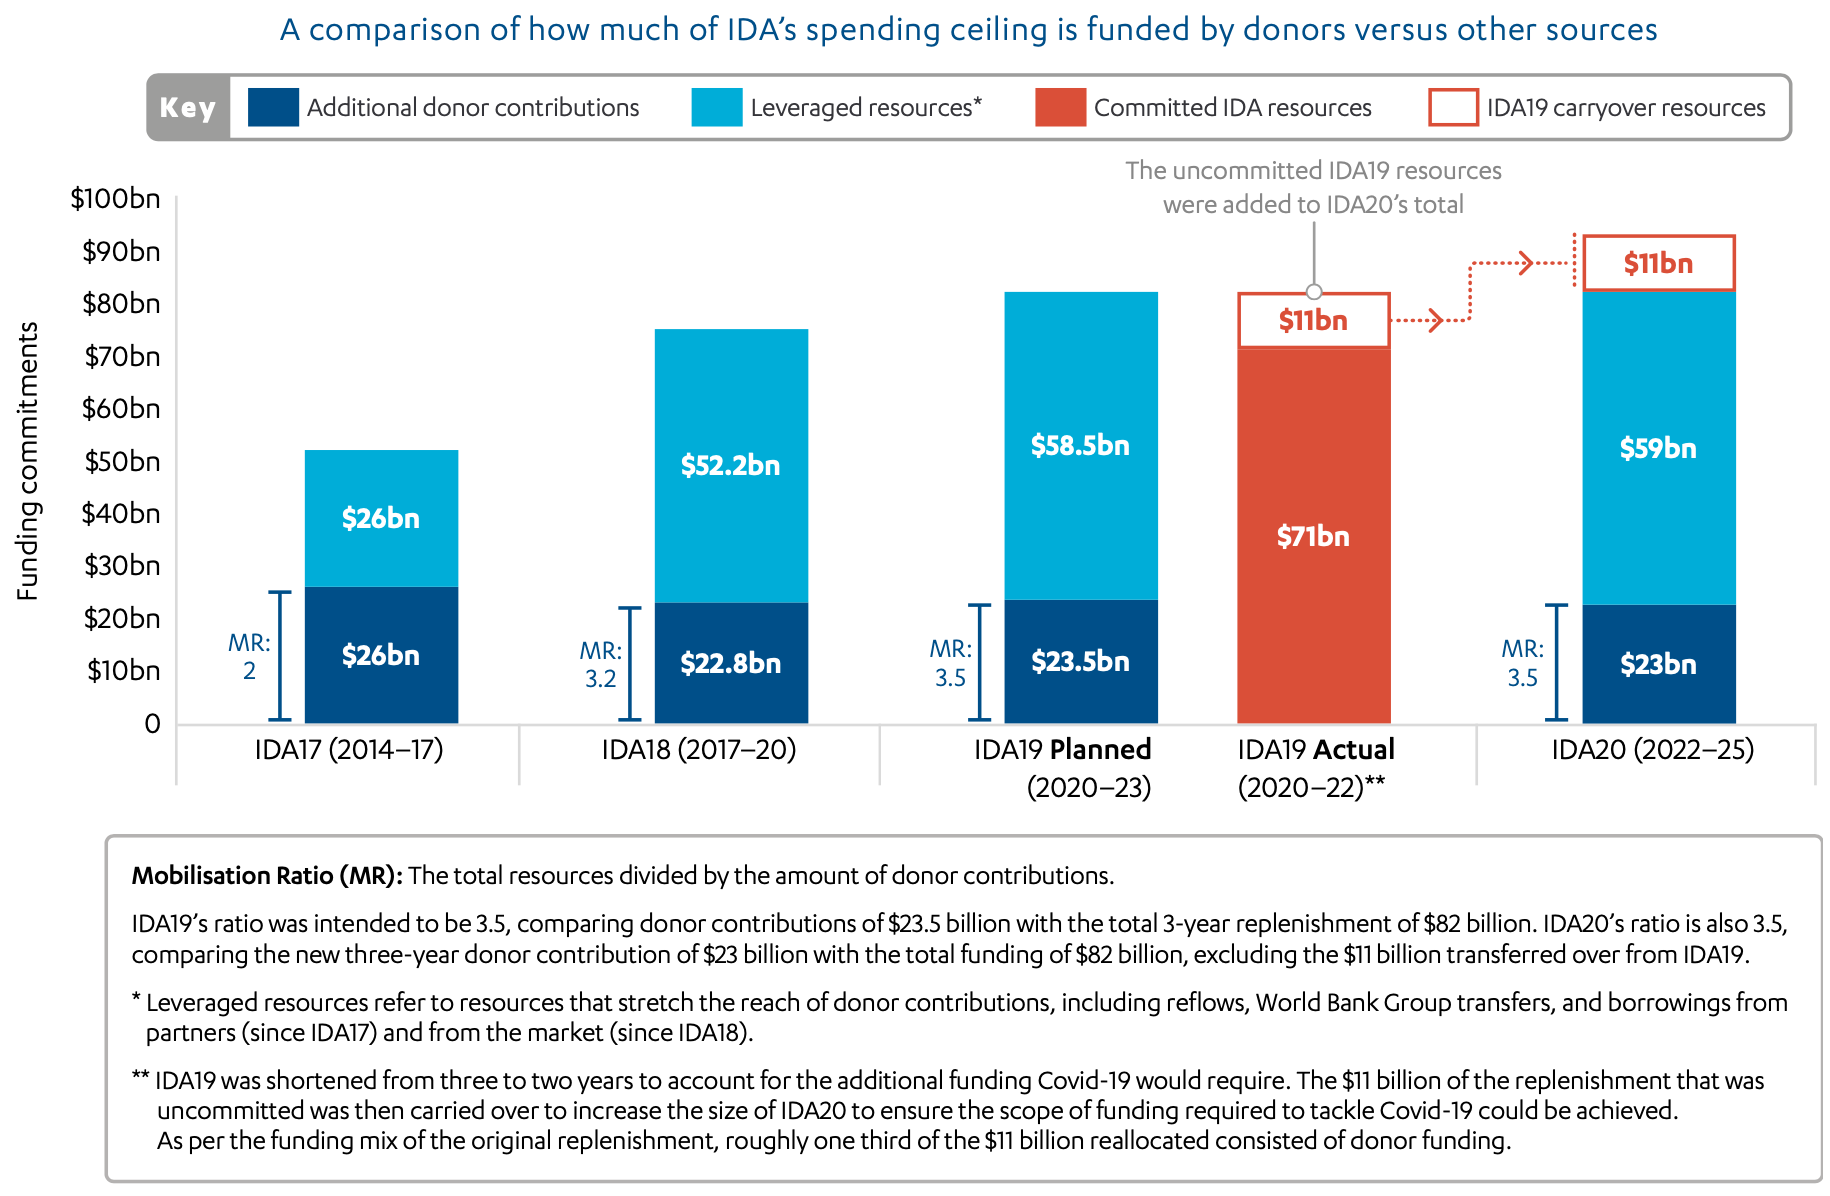 Figure 2: Total IDA financing and funding mobilisation, IDA17 to IDA20